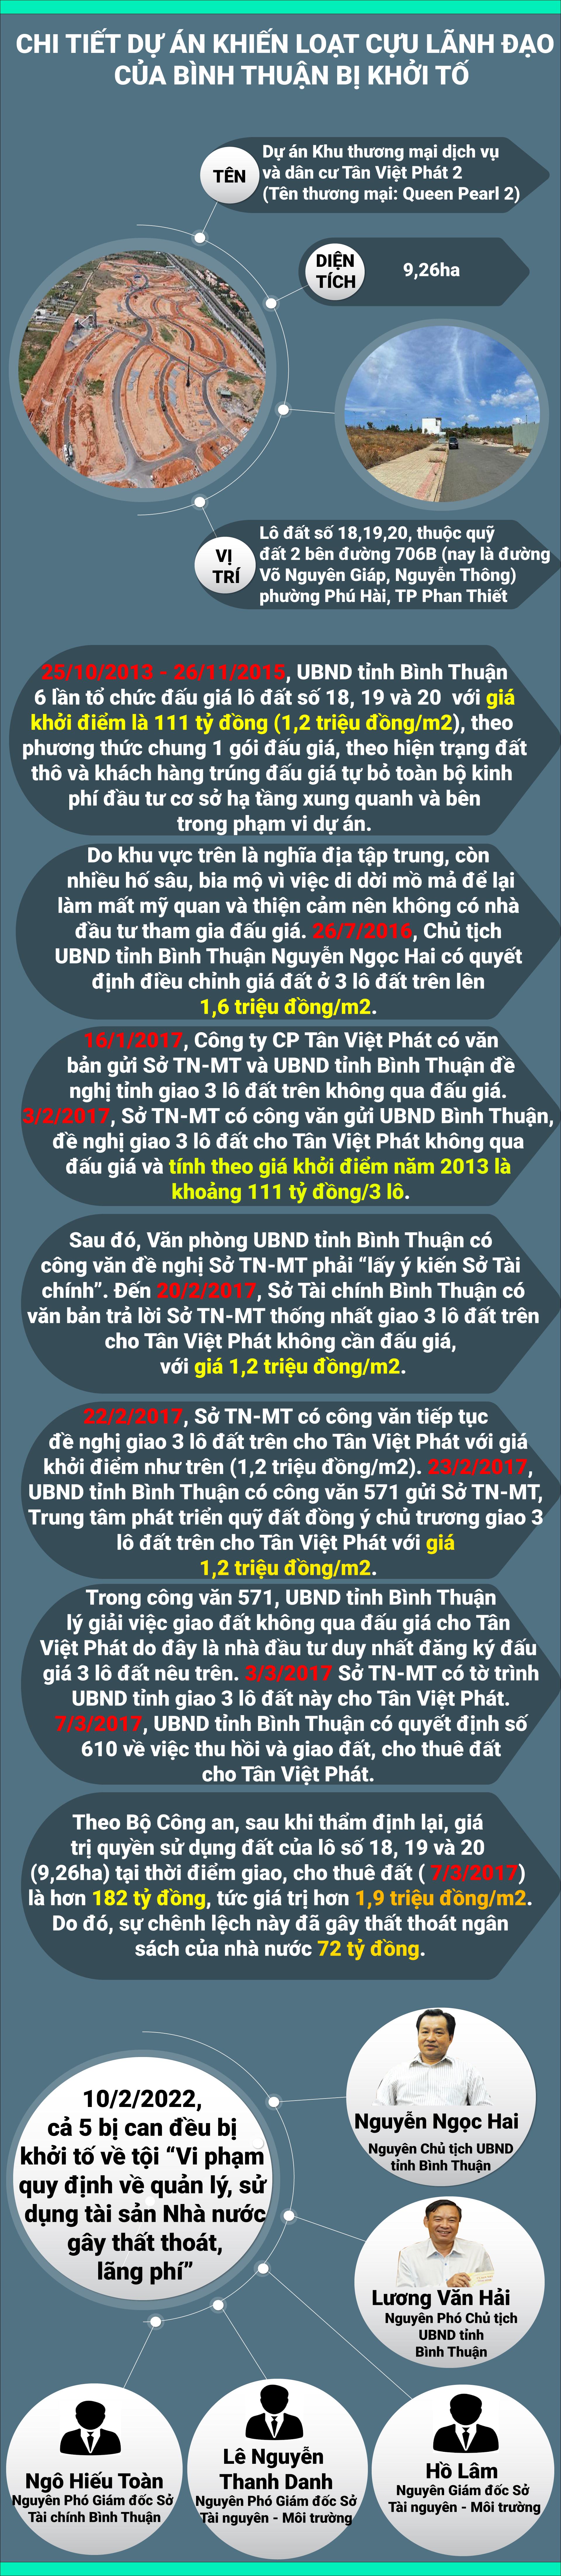 Quá trình giao 9,26ha đất khiến loạt cựu lãnh đạo tỉnh Bình Thuận bị bắt - 1